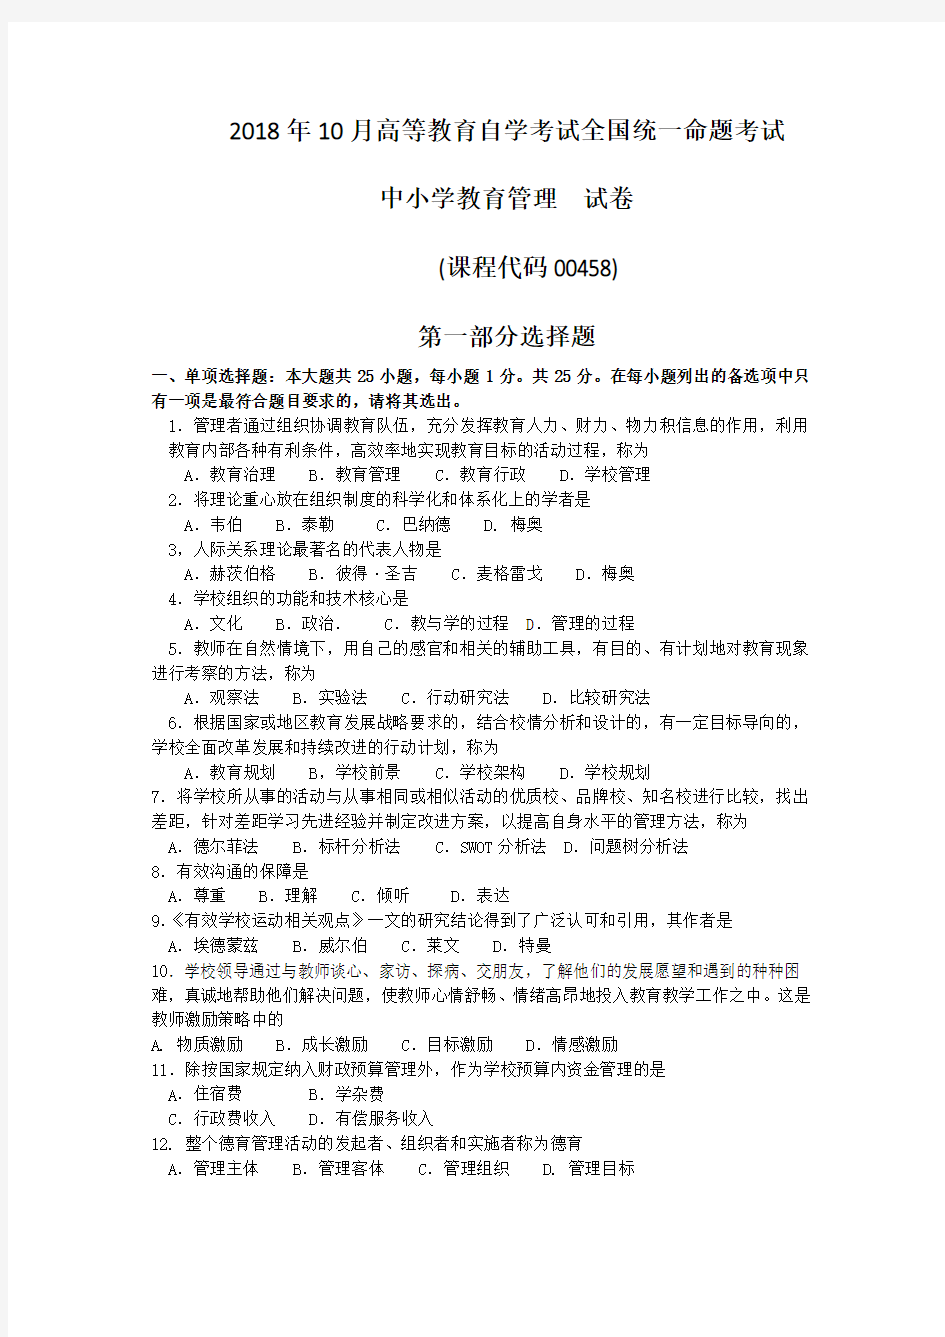 (完整word版)2018年10月自考00458中小学教育管理试卷及答案,推荐文档